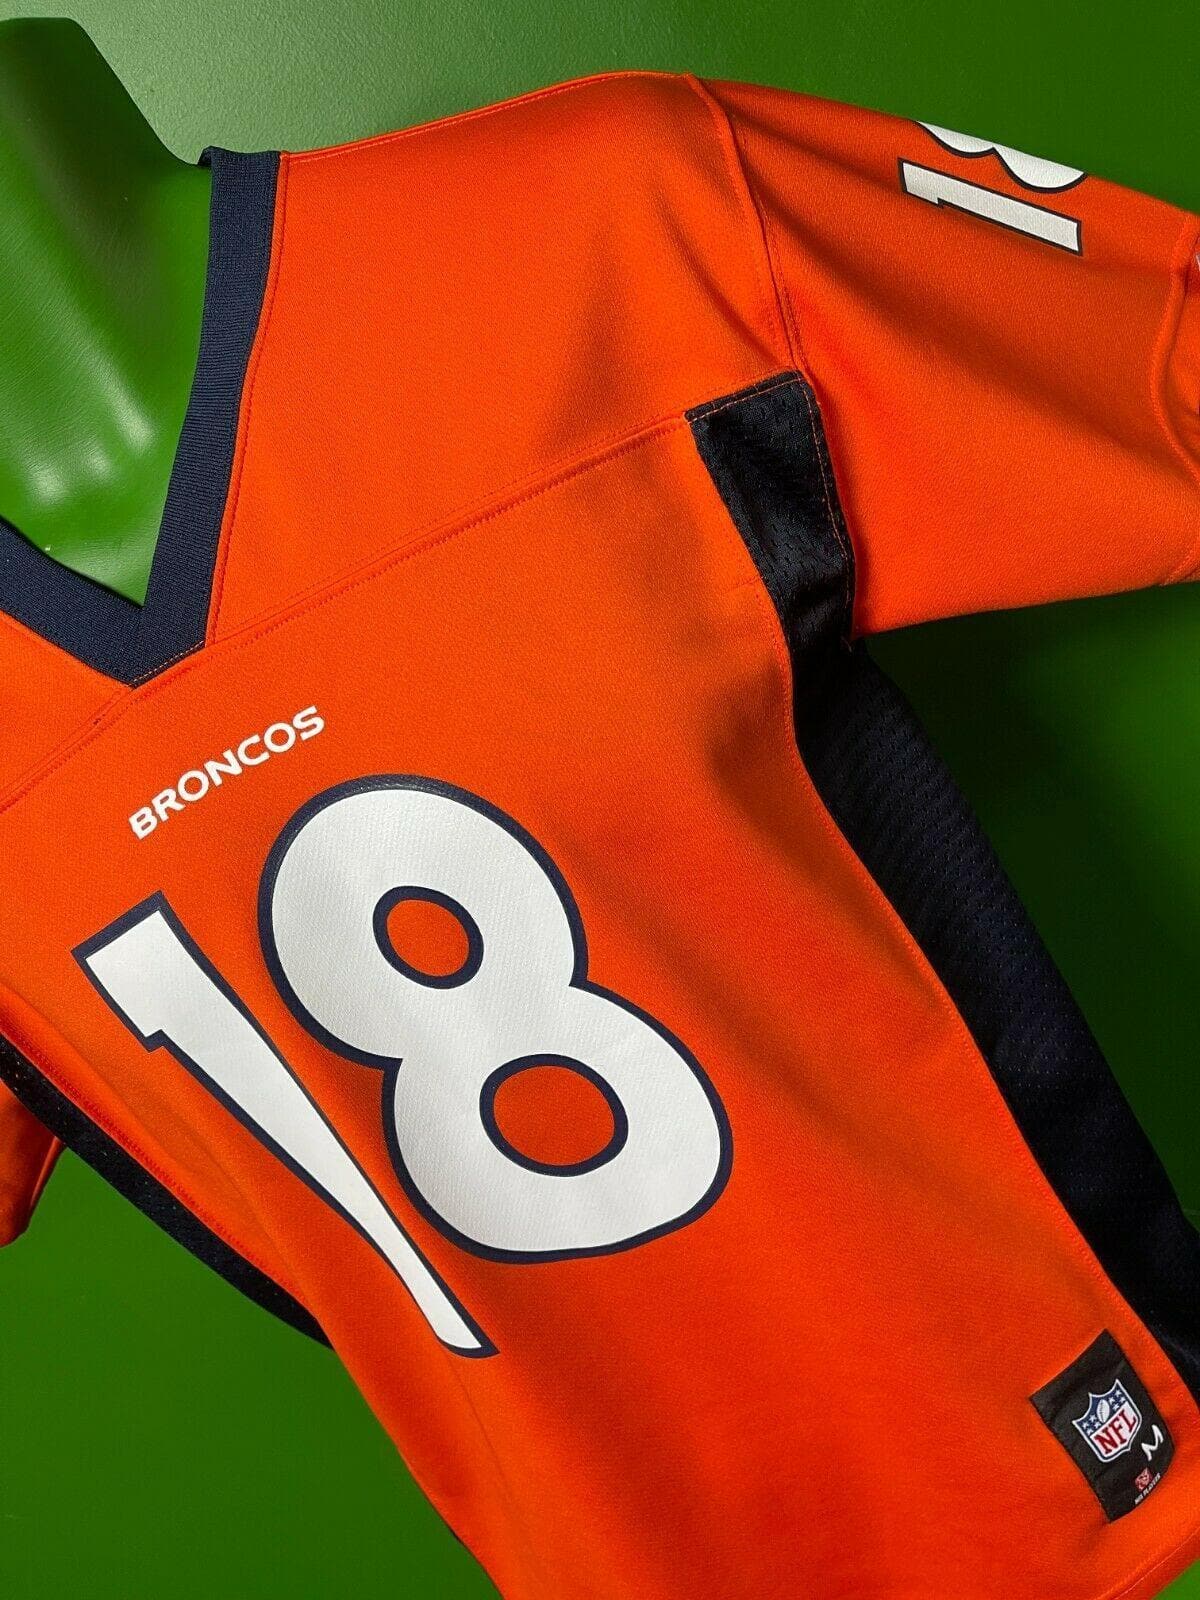 NFL Denver Broncos Peyton Manning #18 Jersey Youth Medium 10-12